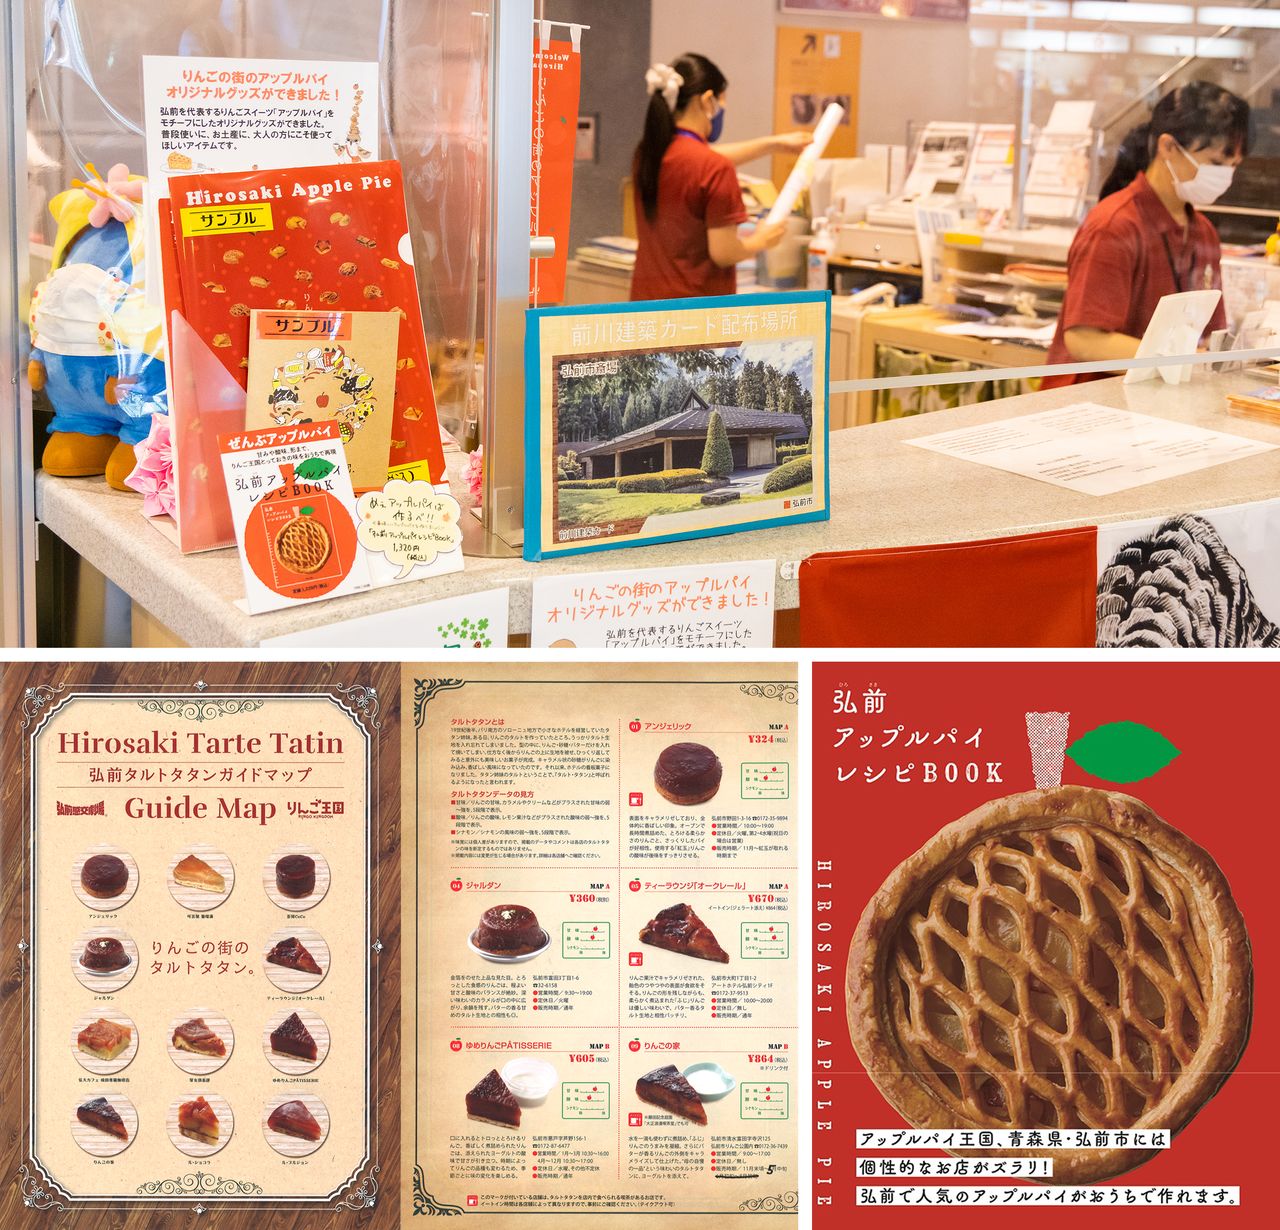 La carpeta y la libreta de notas se pueden conseguir en la oficina de turismo (arriba). La Hirosaki Tarte Tatin Guide Map (abajo a la izquierda) y el recetario Hirosaki Apple Pie Recipe BOOK (abajo a la derecha).